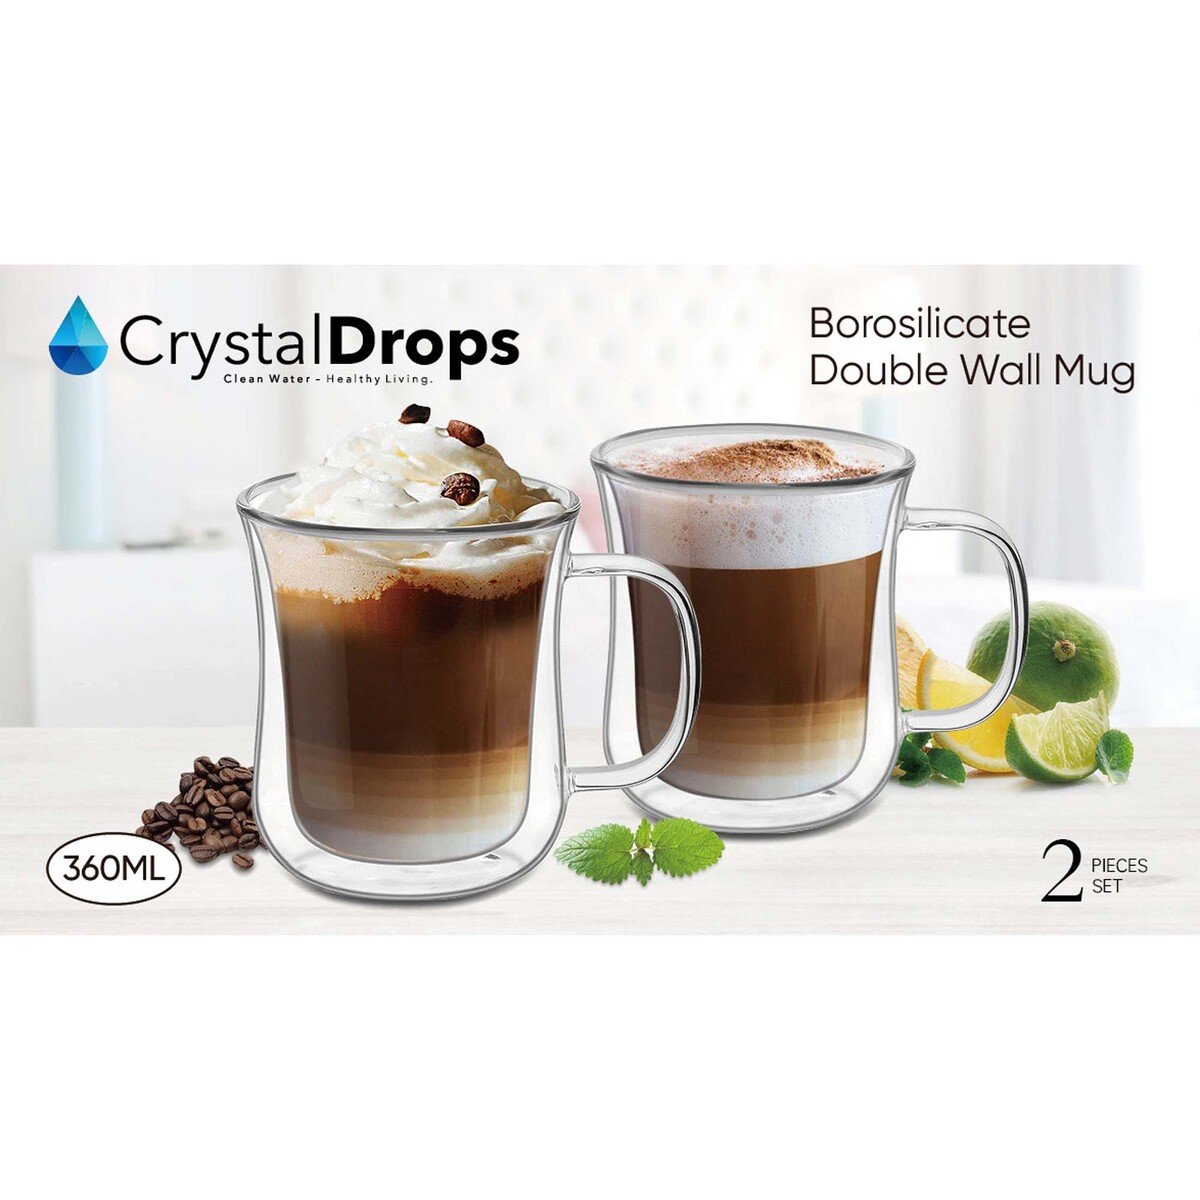 Crystal Drops Borosilicate Double Wall Mug Set, 360 ml, 2 Pcs, 20252